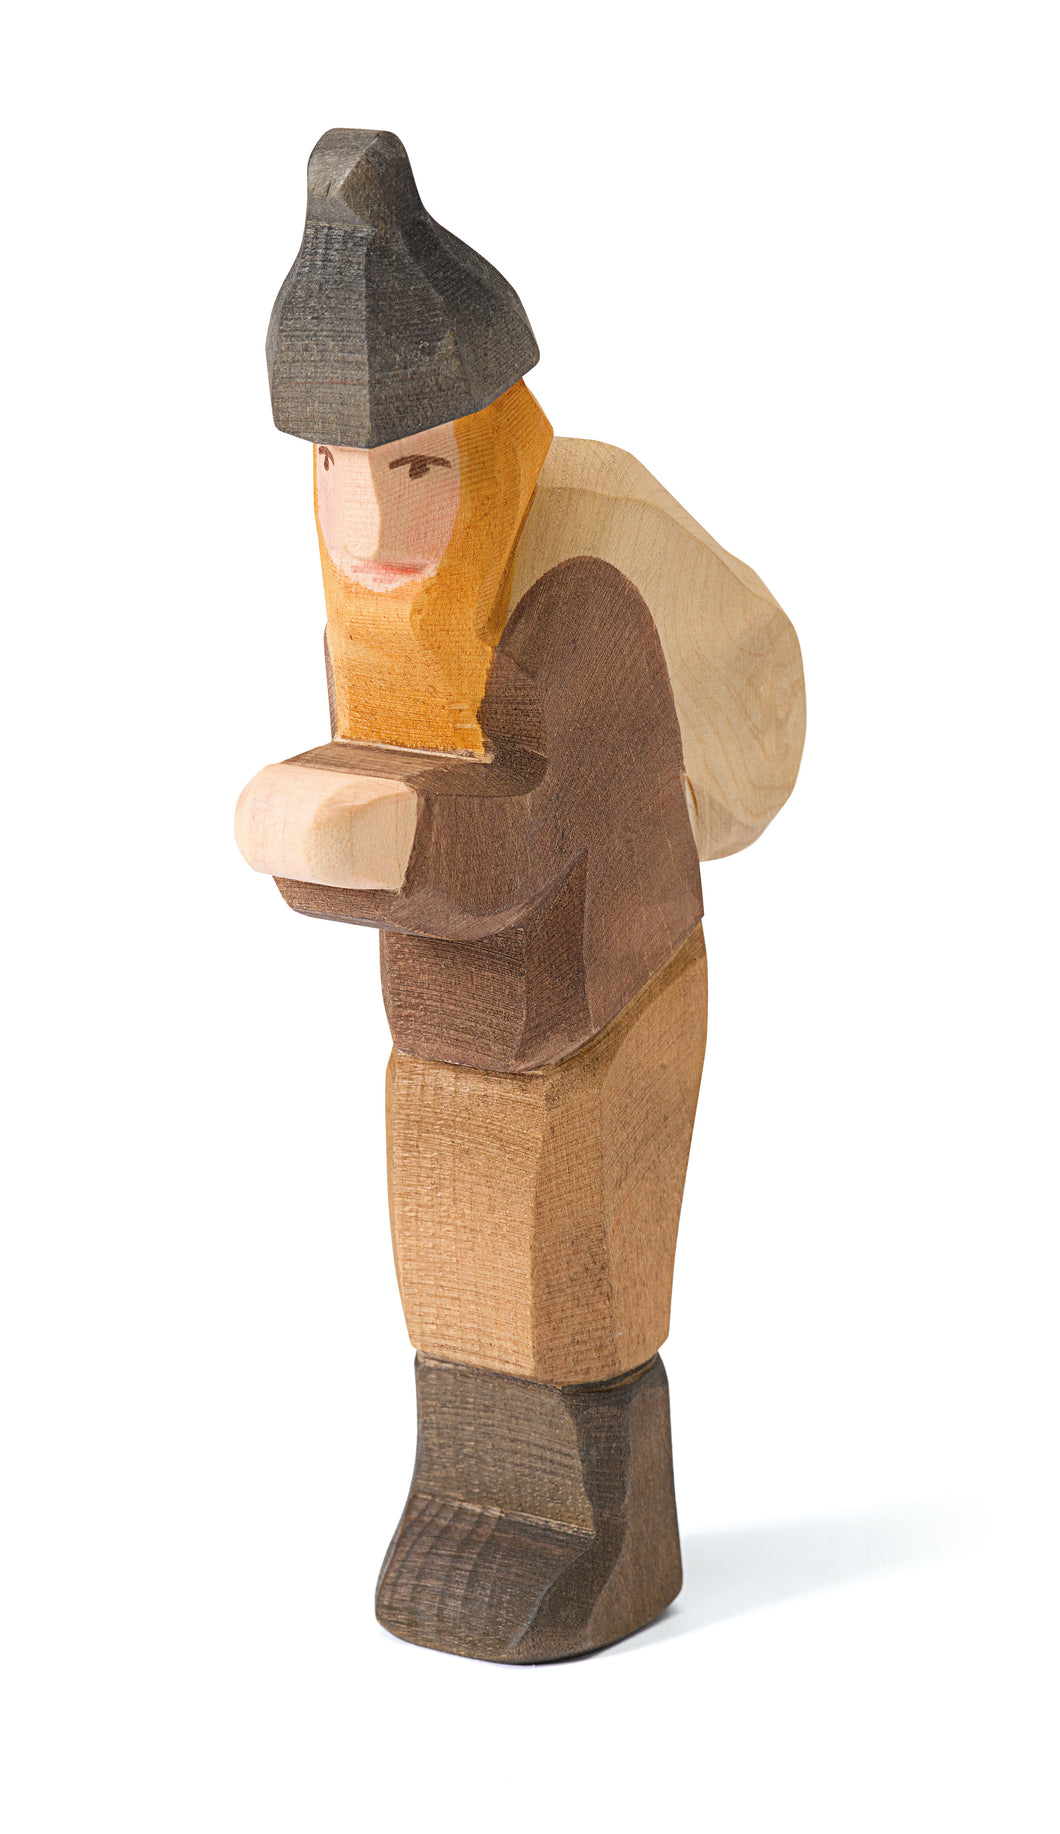 Knecht Ruprecht Spielfigur aus Holz von Ostheimer